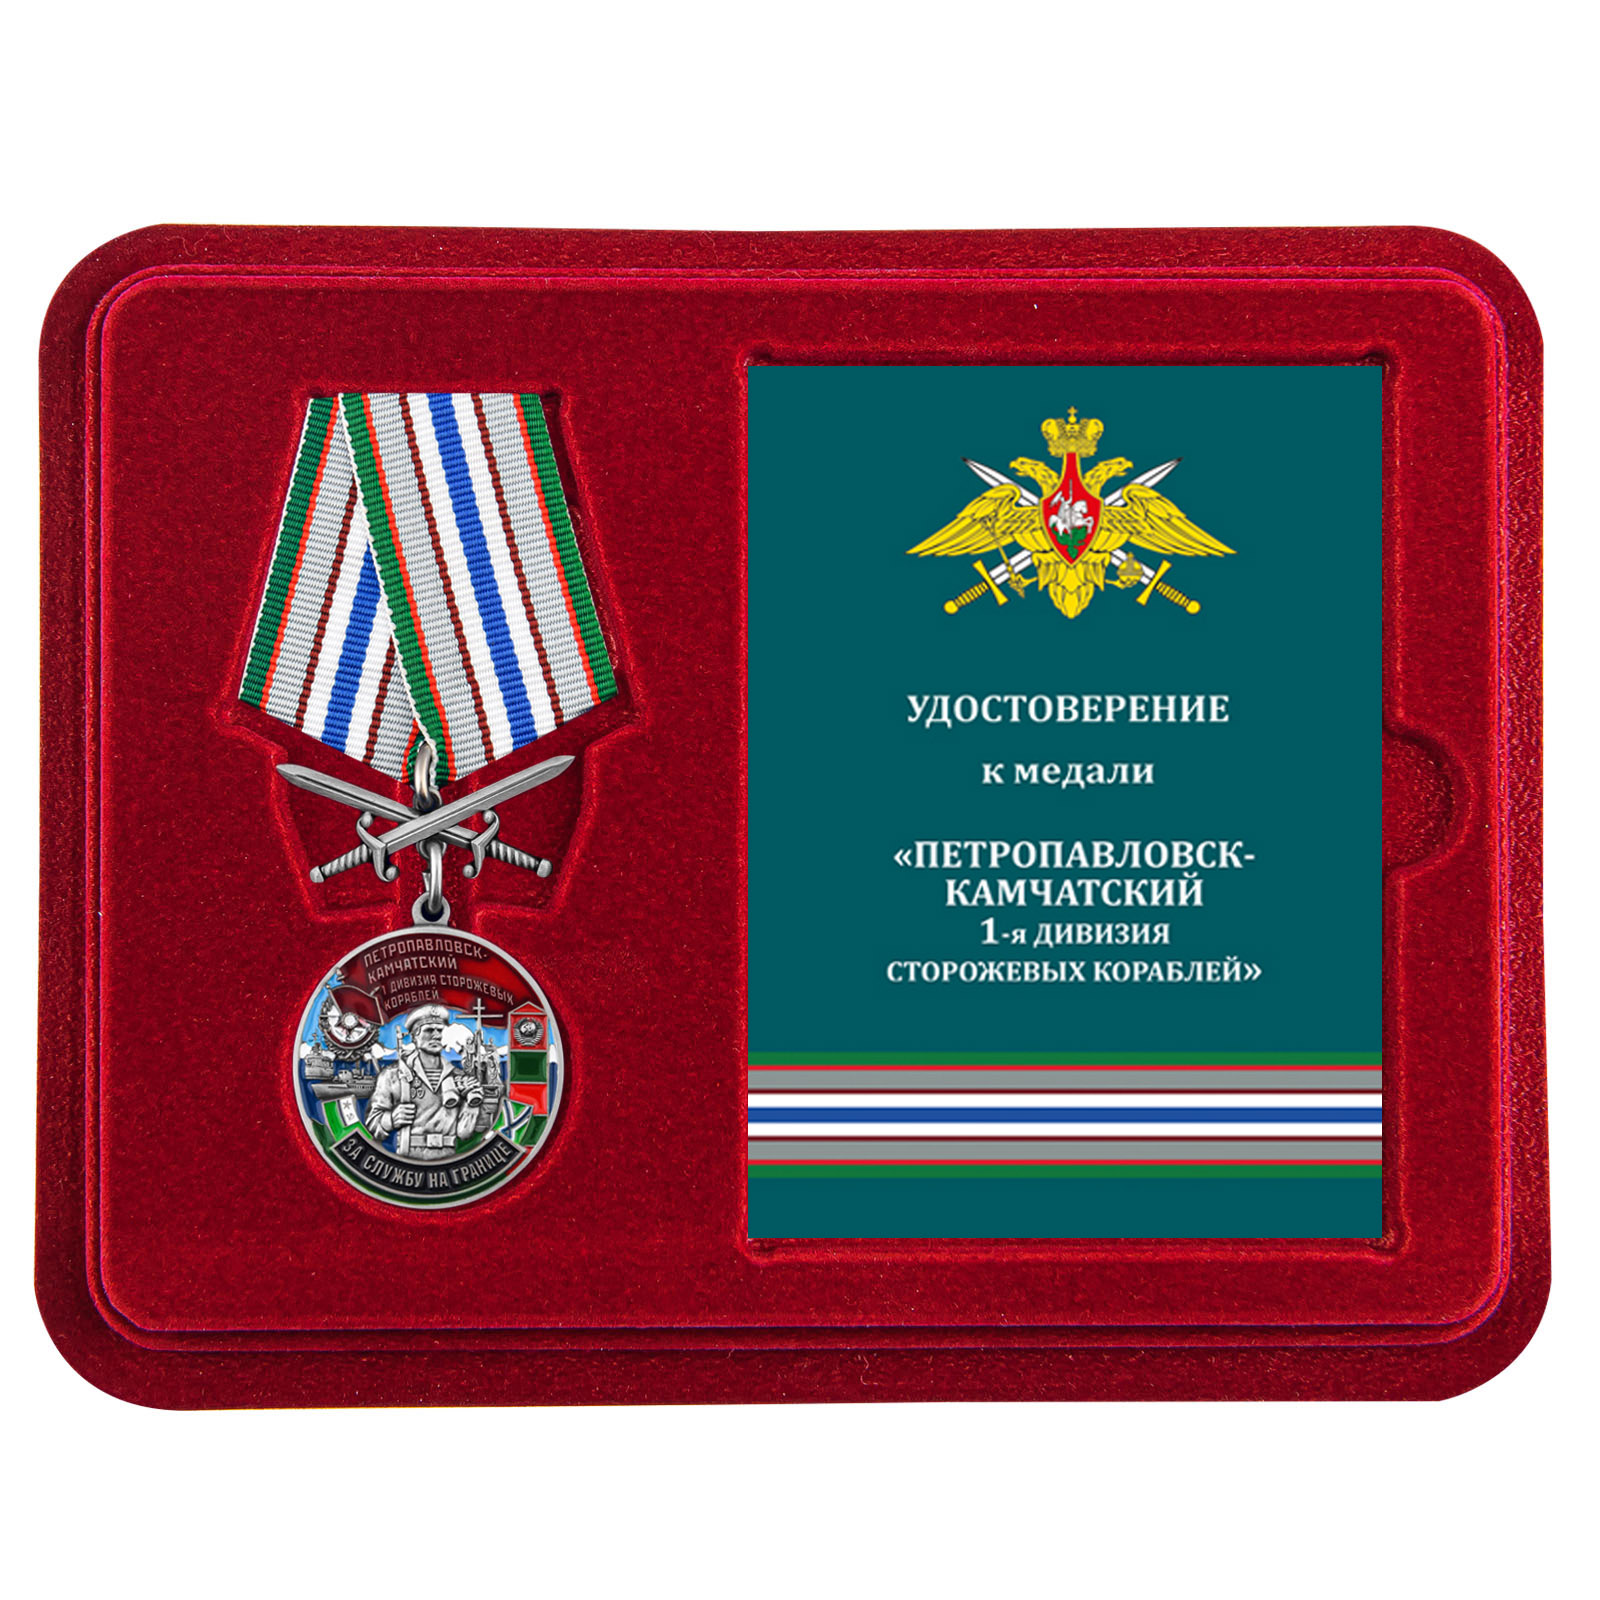 Купить медаль За службу в 1-ой дивизии сторожевых кораблей выгодно